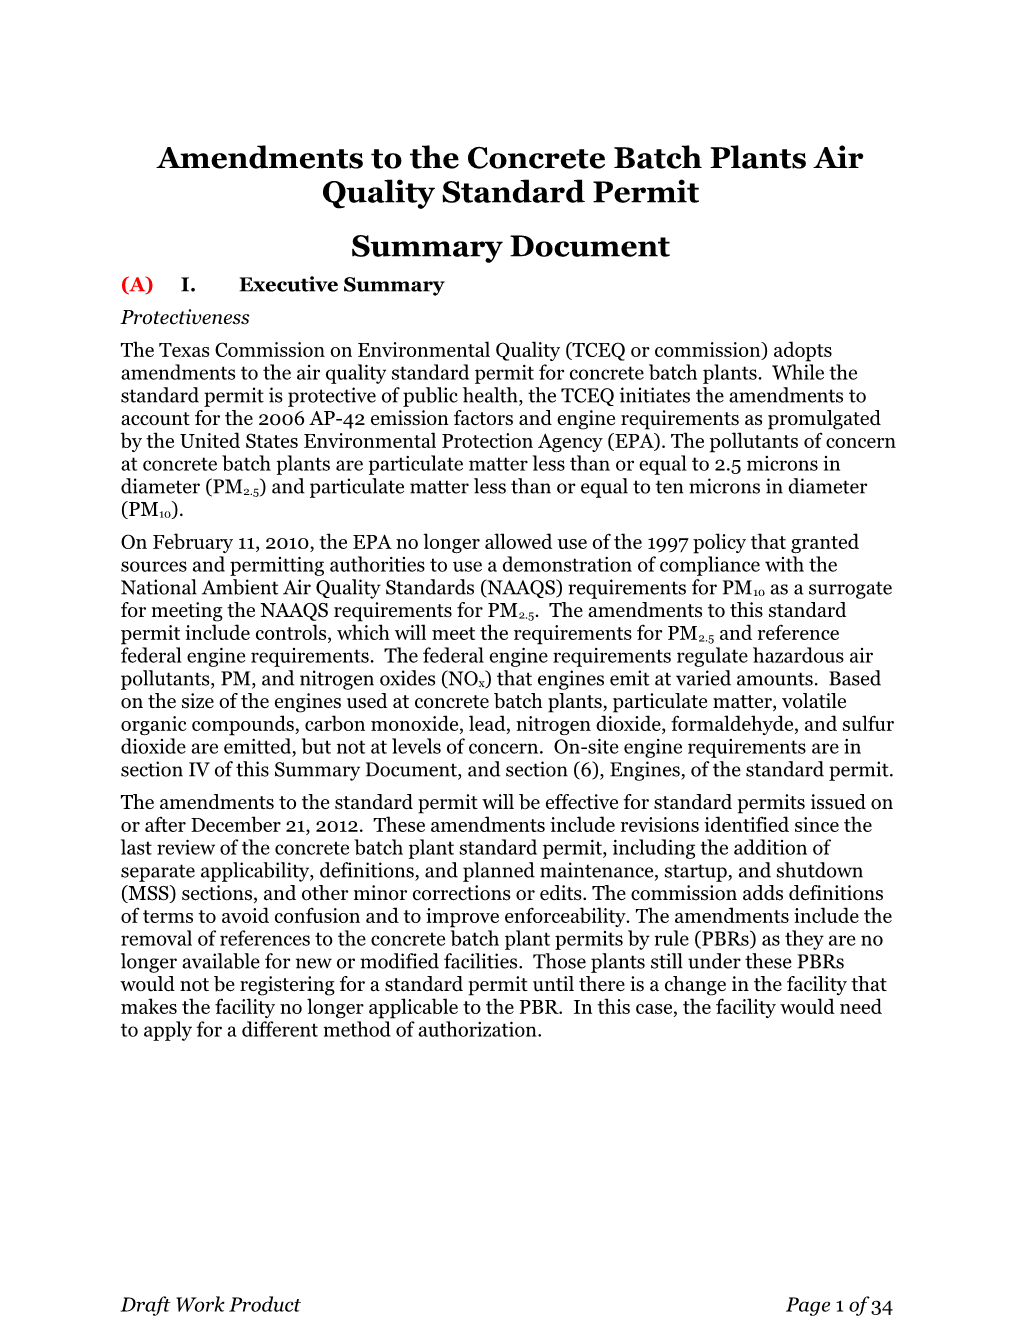 Amendments to the Concrete Batch Plants Air Quality Standard Permit